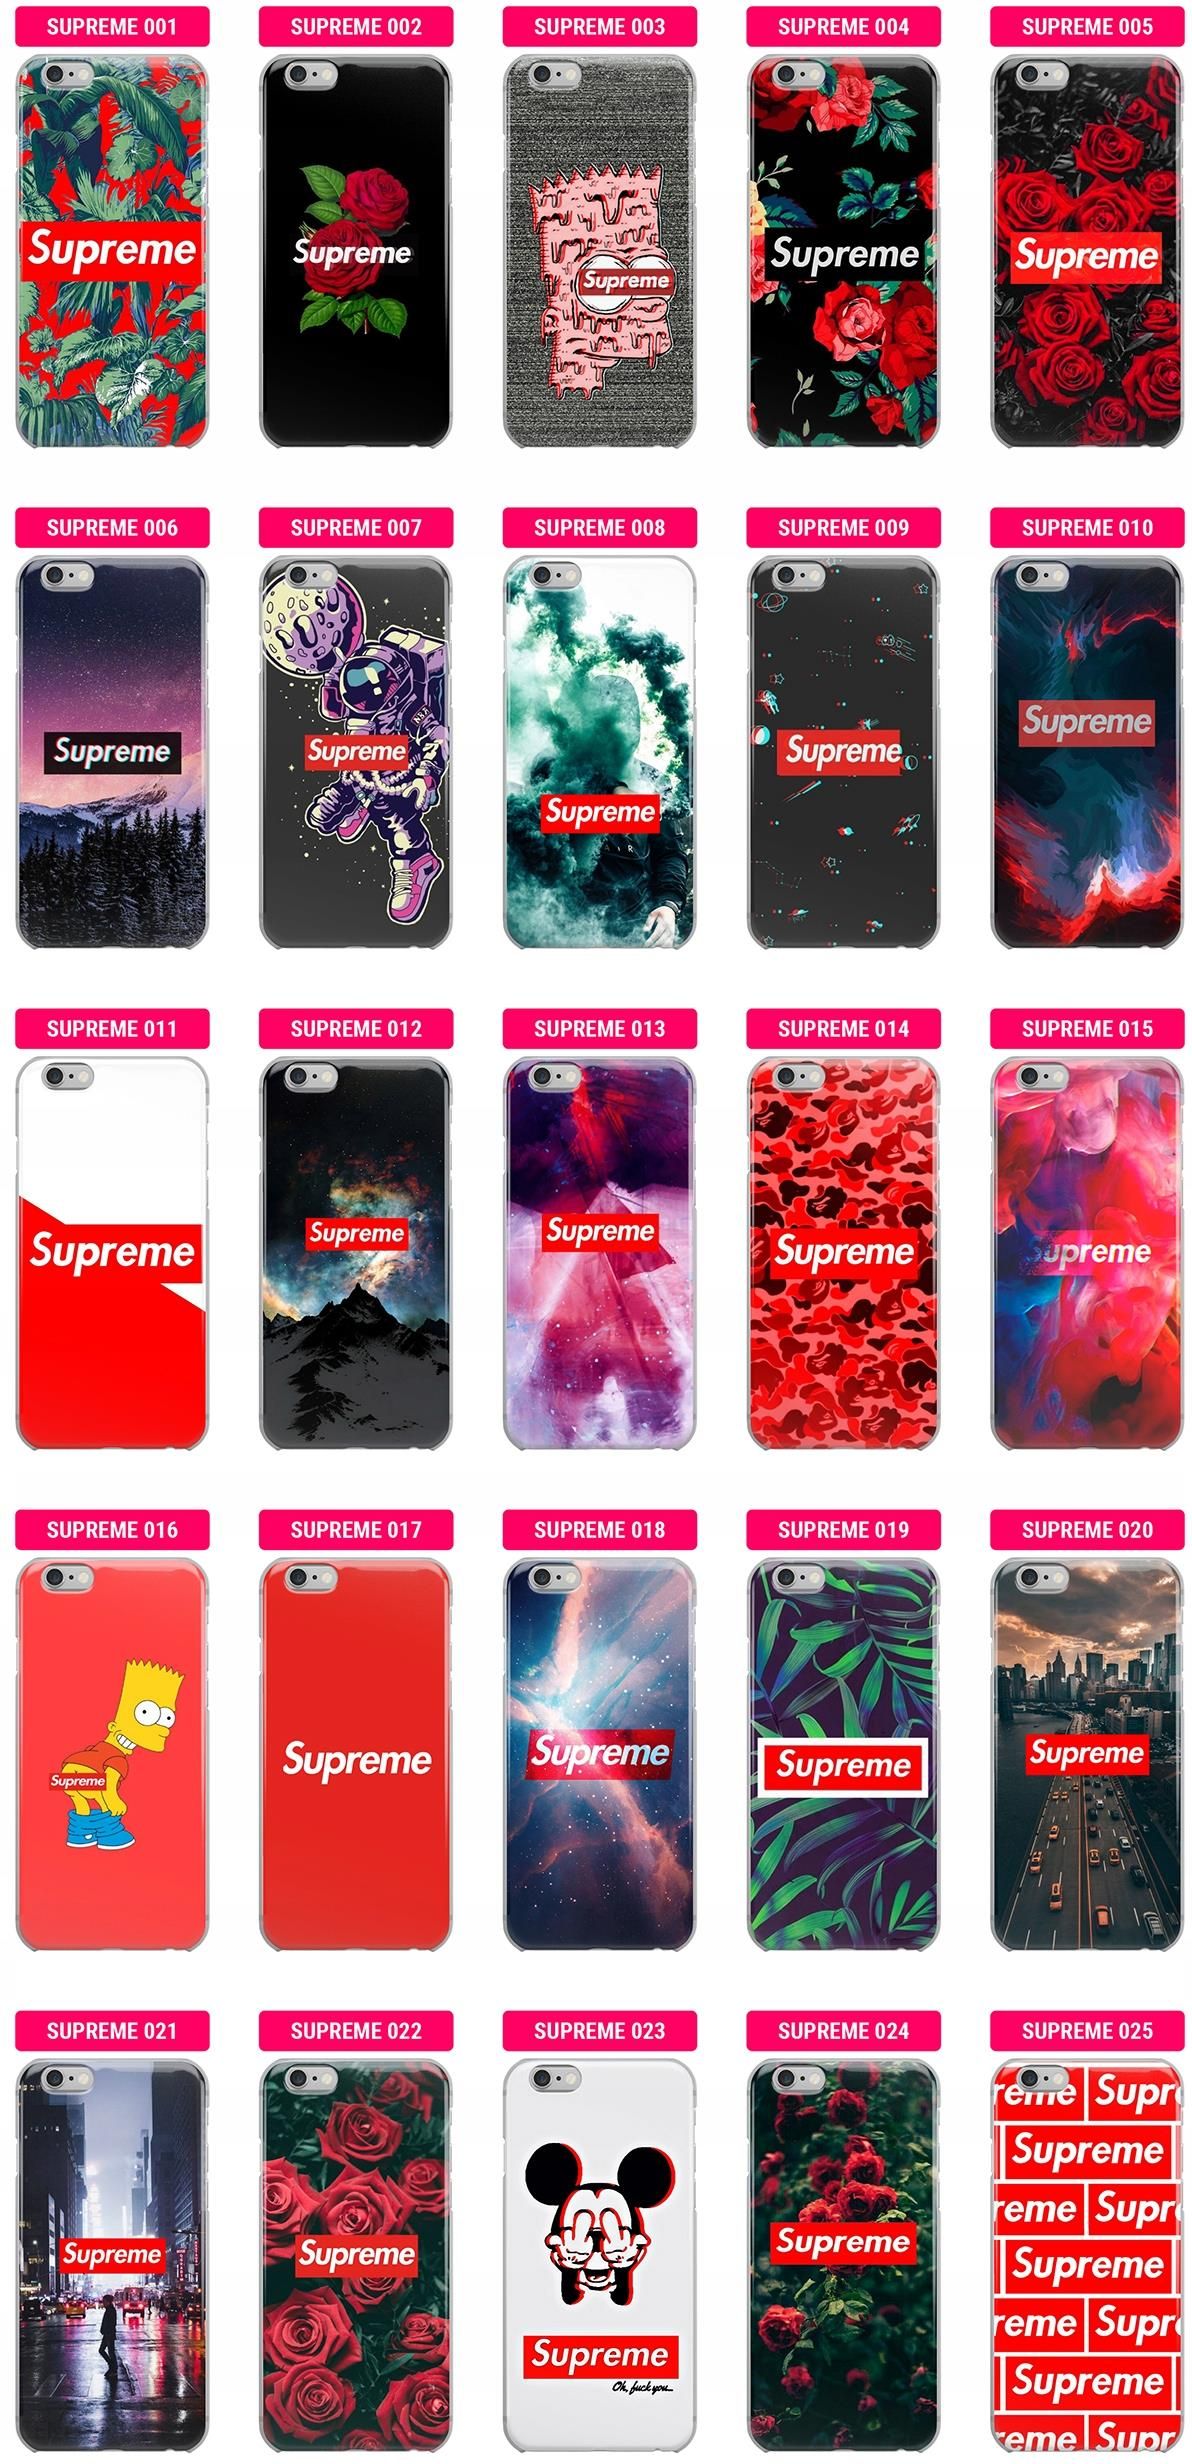 Etui Supreme iPHONE Xs Max - Etui na telefon, ceny i opinie